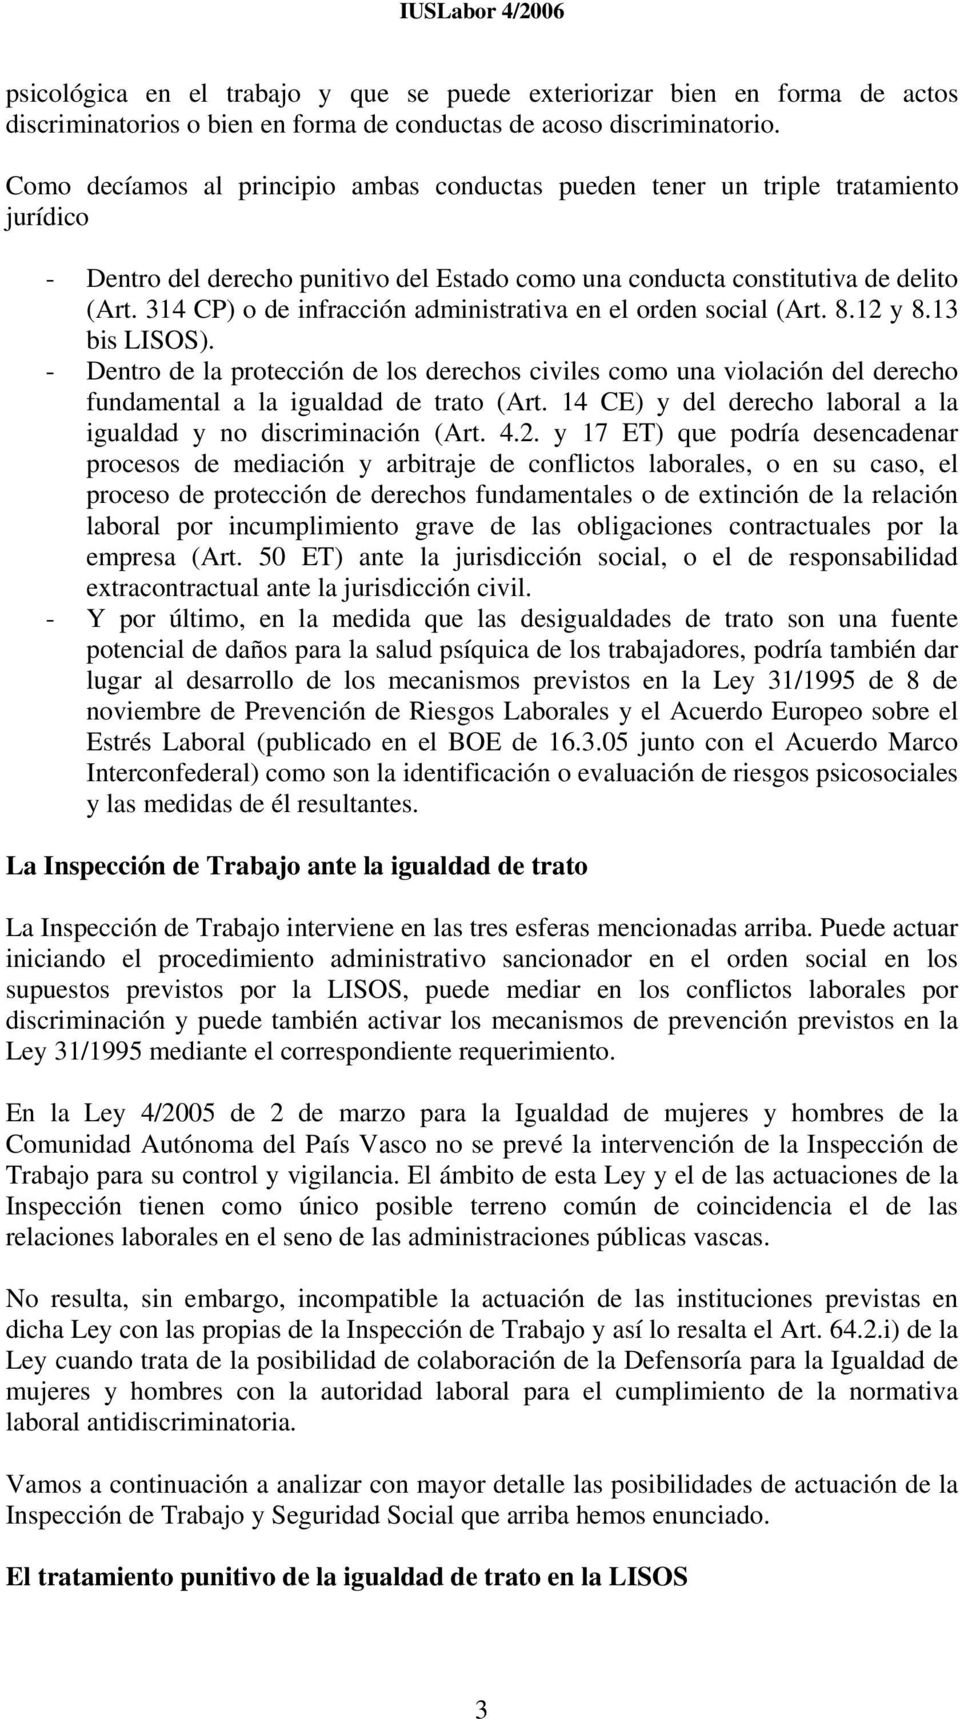 314 CP) o de infracción administrativa en el orden social (Art. 8.12 y 8.13 bis LISOS).